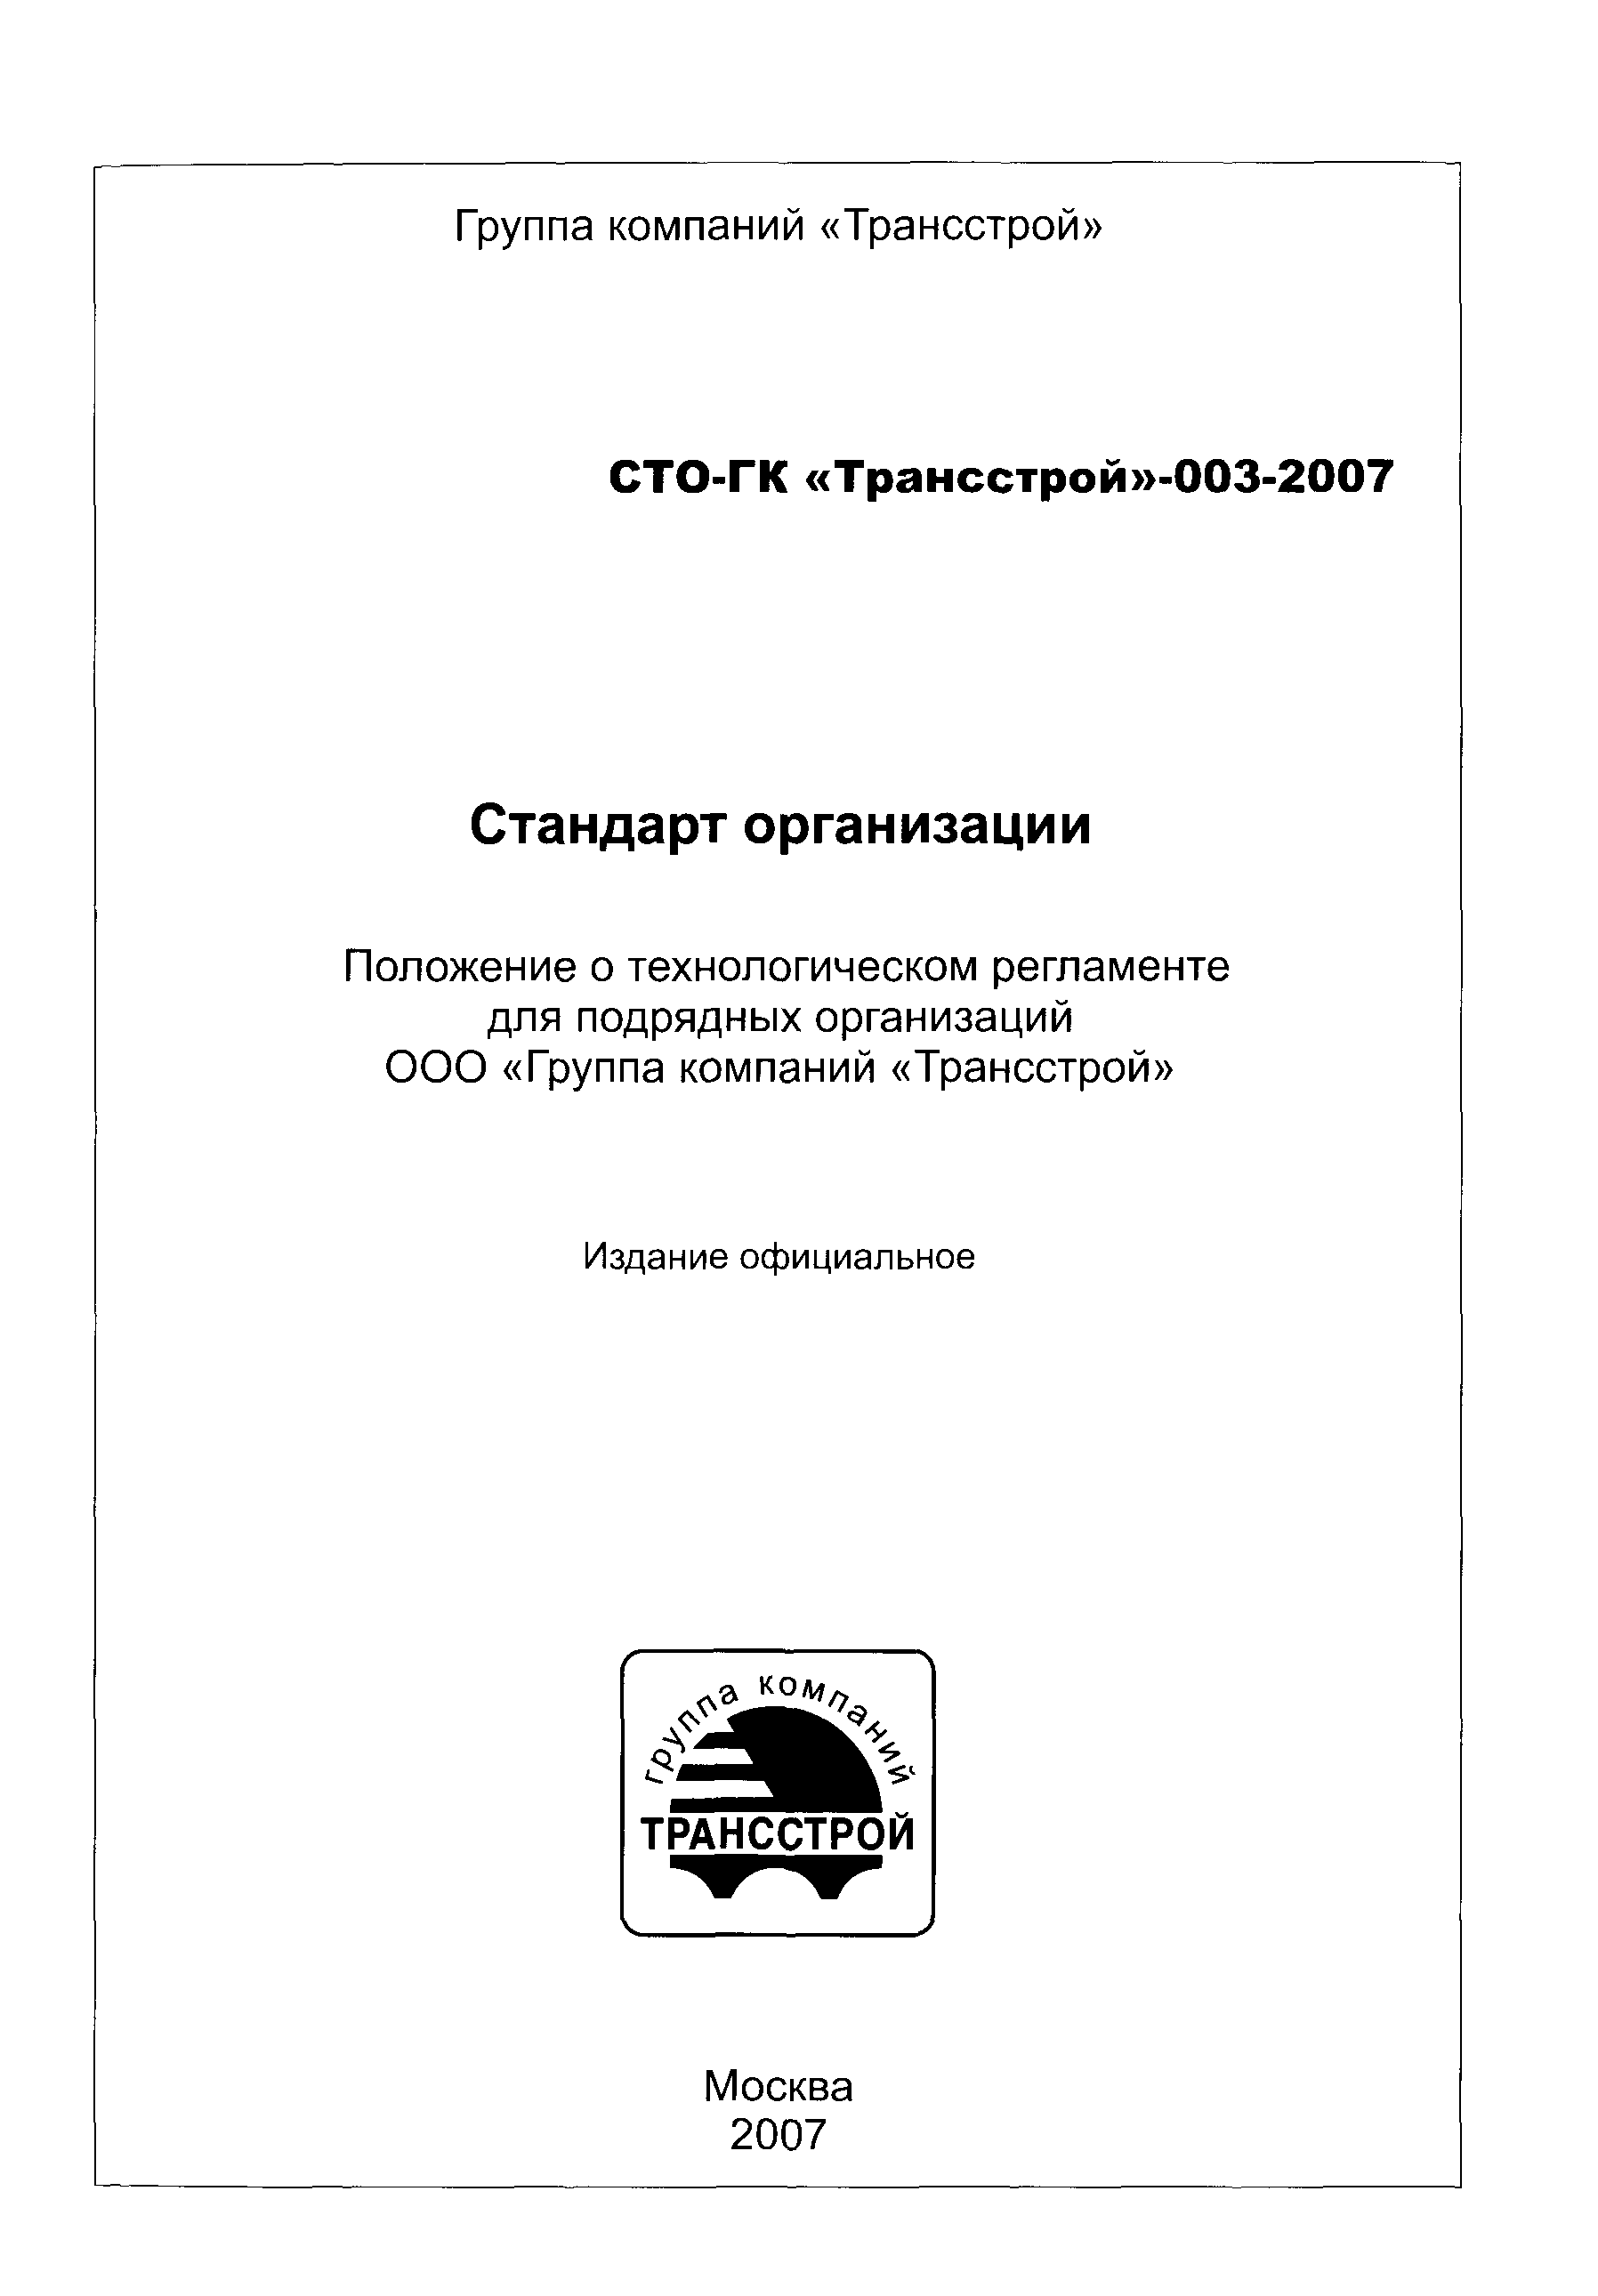 СТО-ГК "Трансстрой" 003-2007